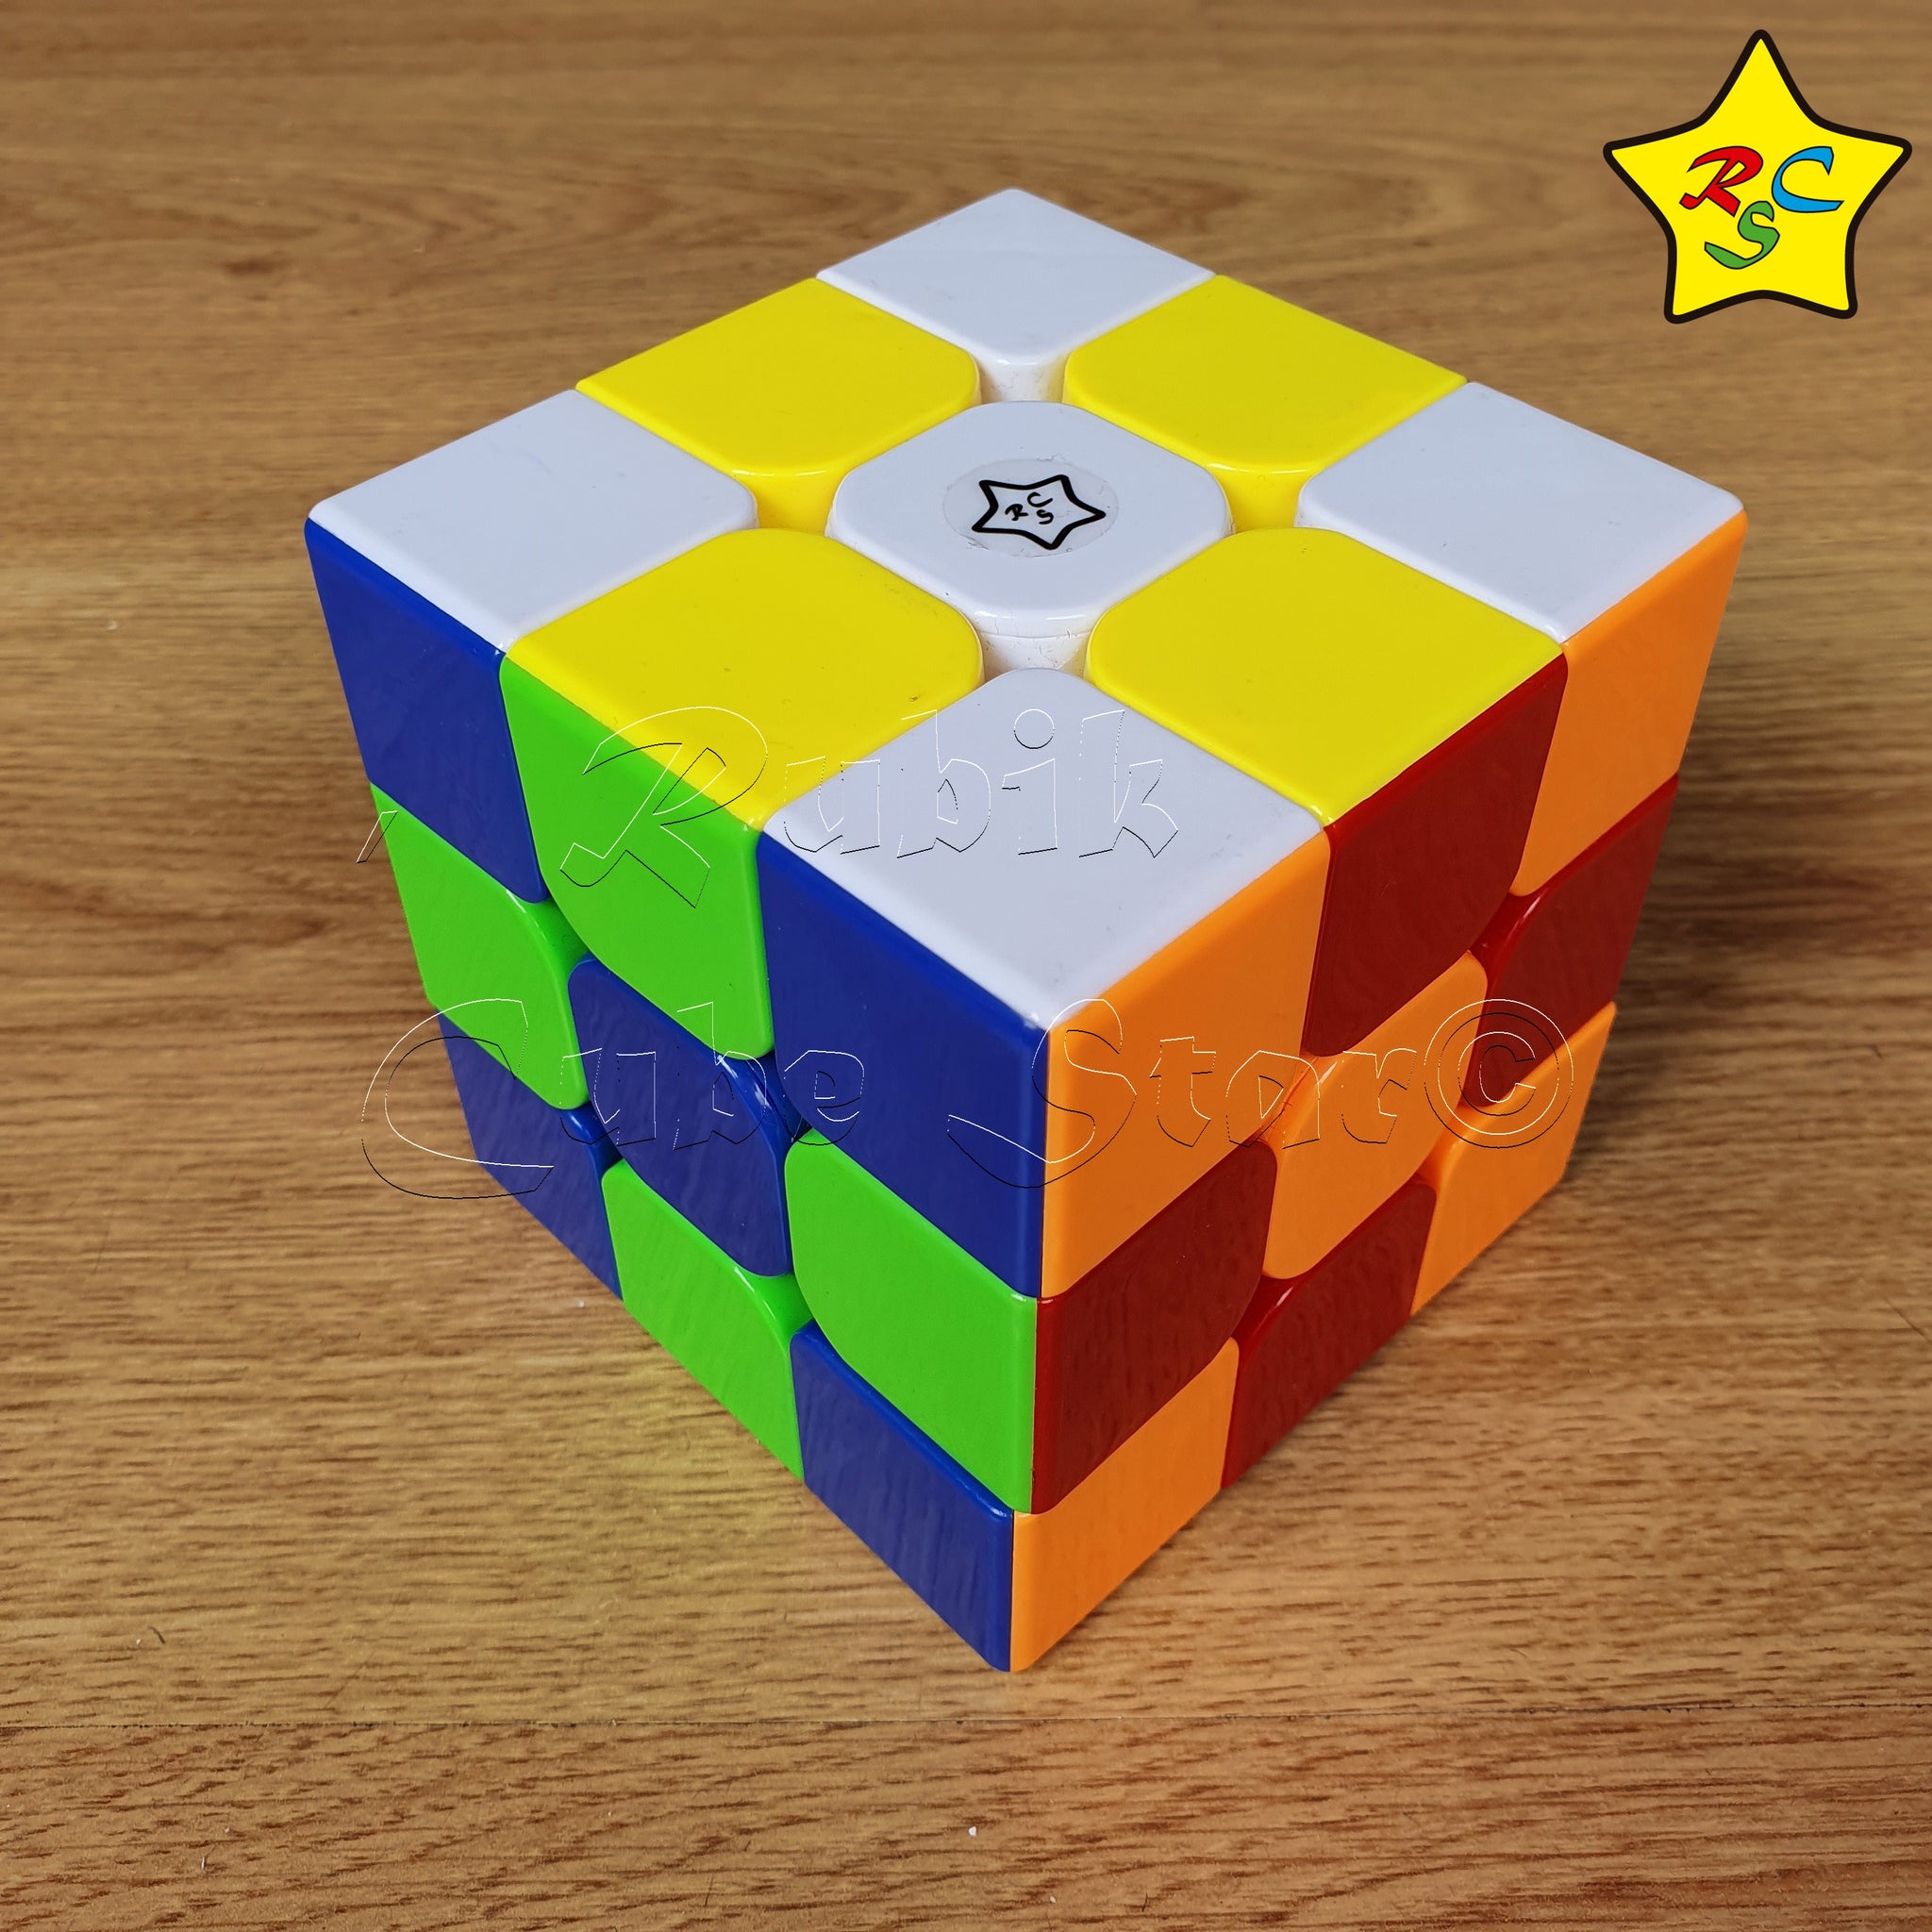 Cubo De Rubik Gigante Cubo Rubik 3x3 9 cm Super Grande Didactico Magic Cube Stickerless – Rubik  Cube Star